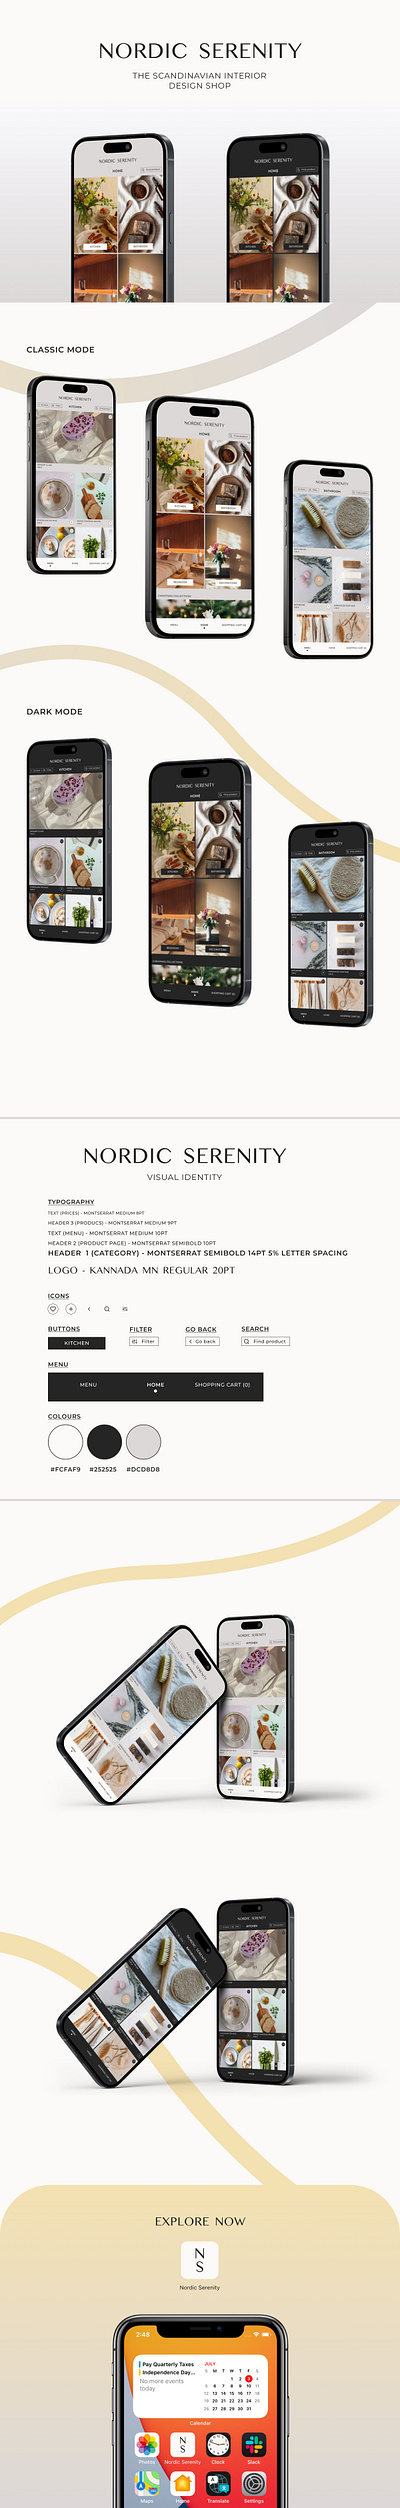 Nordic Serenity app app design branding design graphic design typography ui ui design ux ux design visual identity